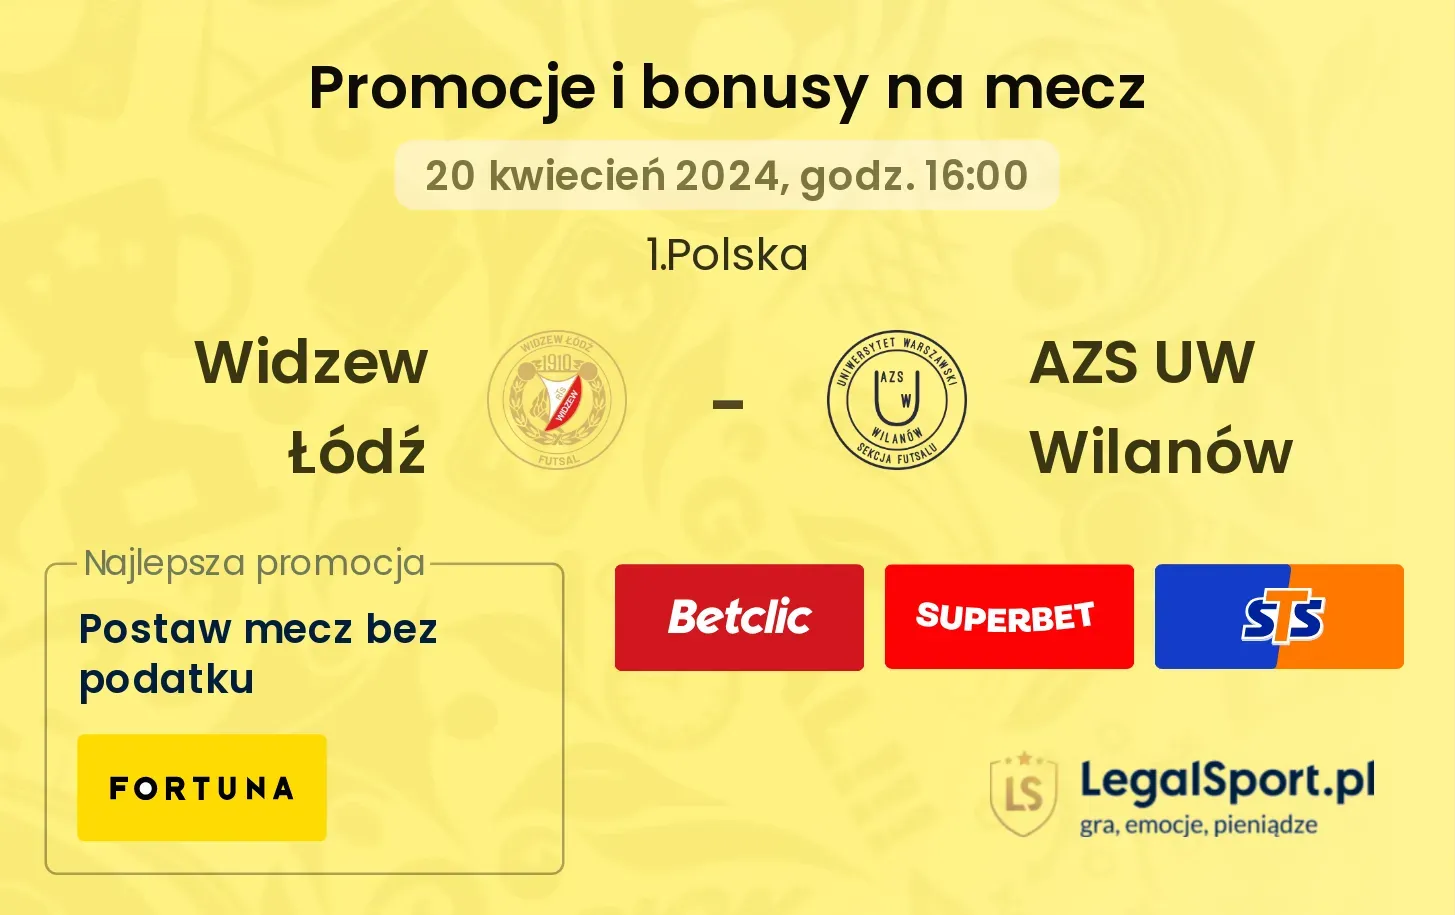 Widzew Łódź - AZS UW Wilanów promocje bonusy na mecz